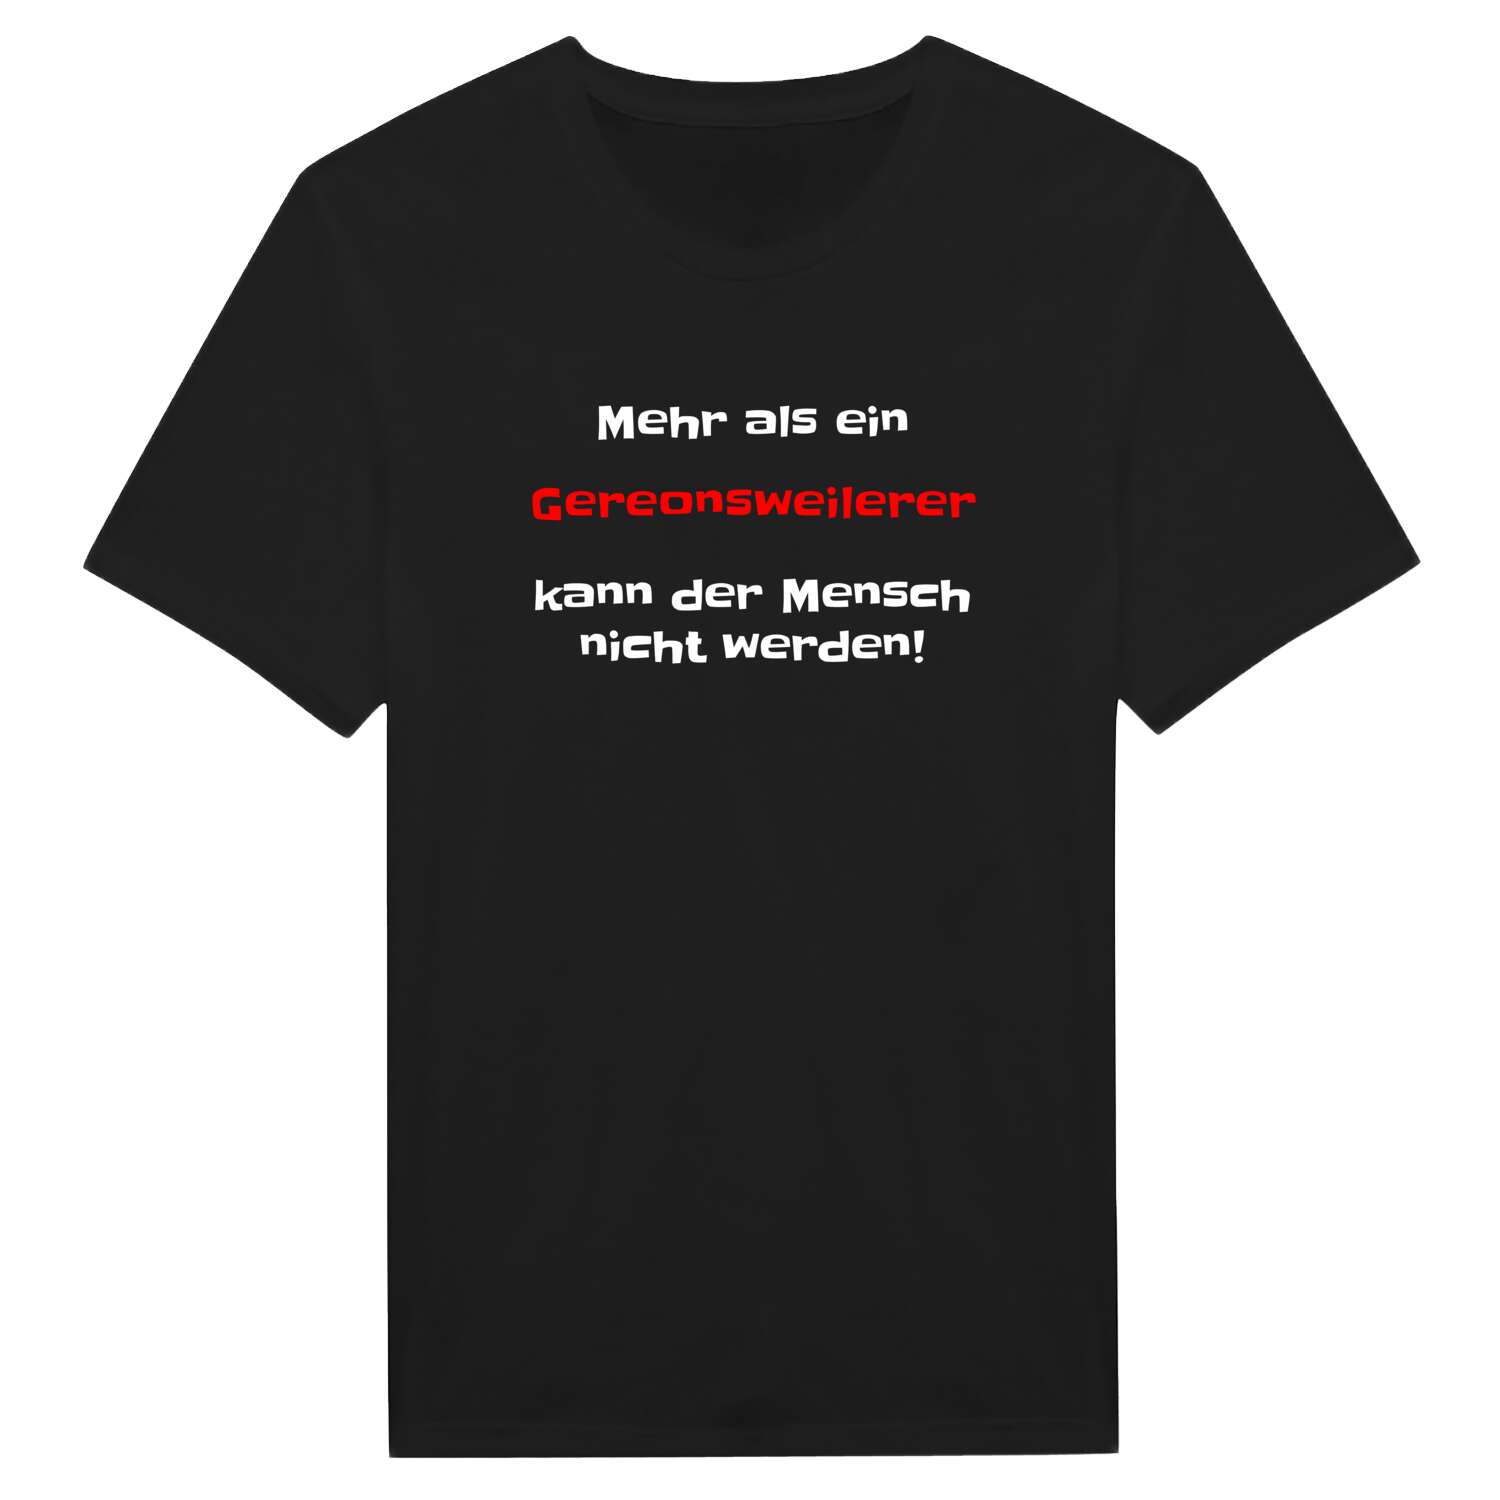 Gereonsweiler T-Shirt »Mehr als ein«